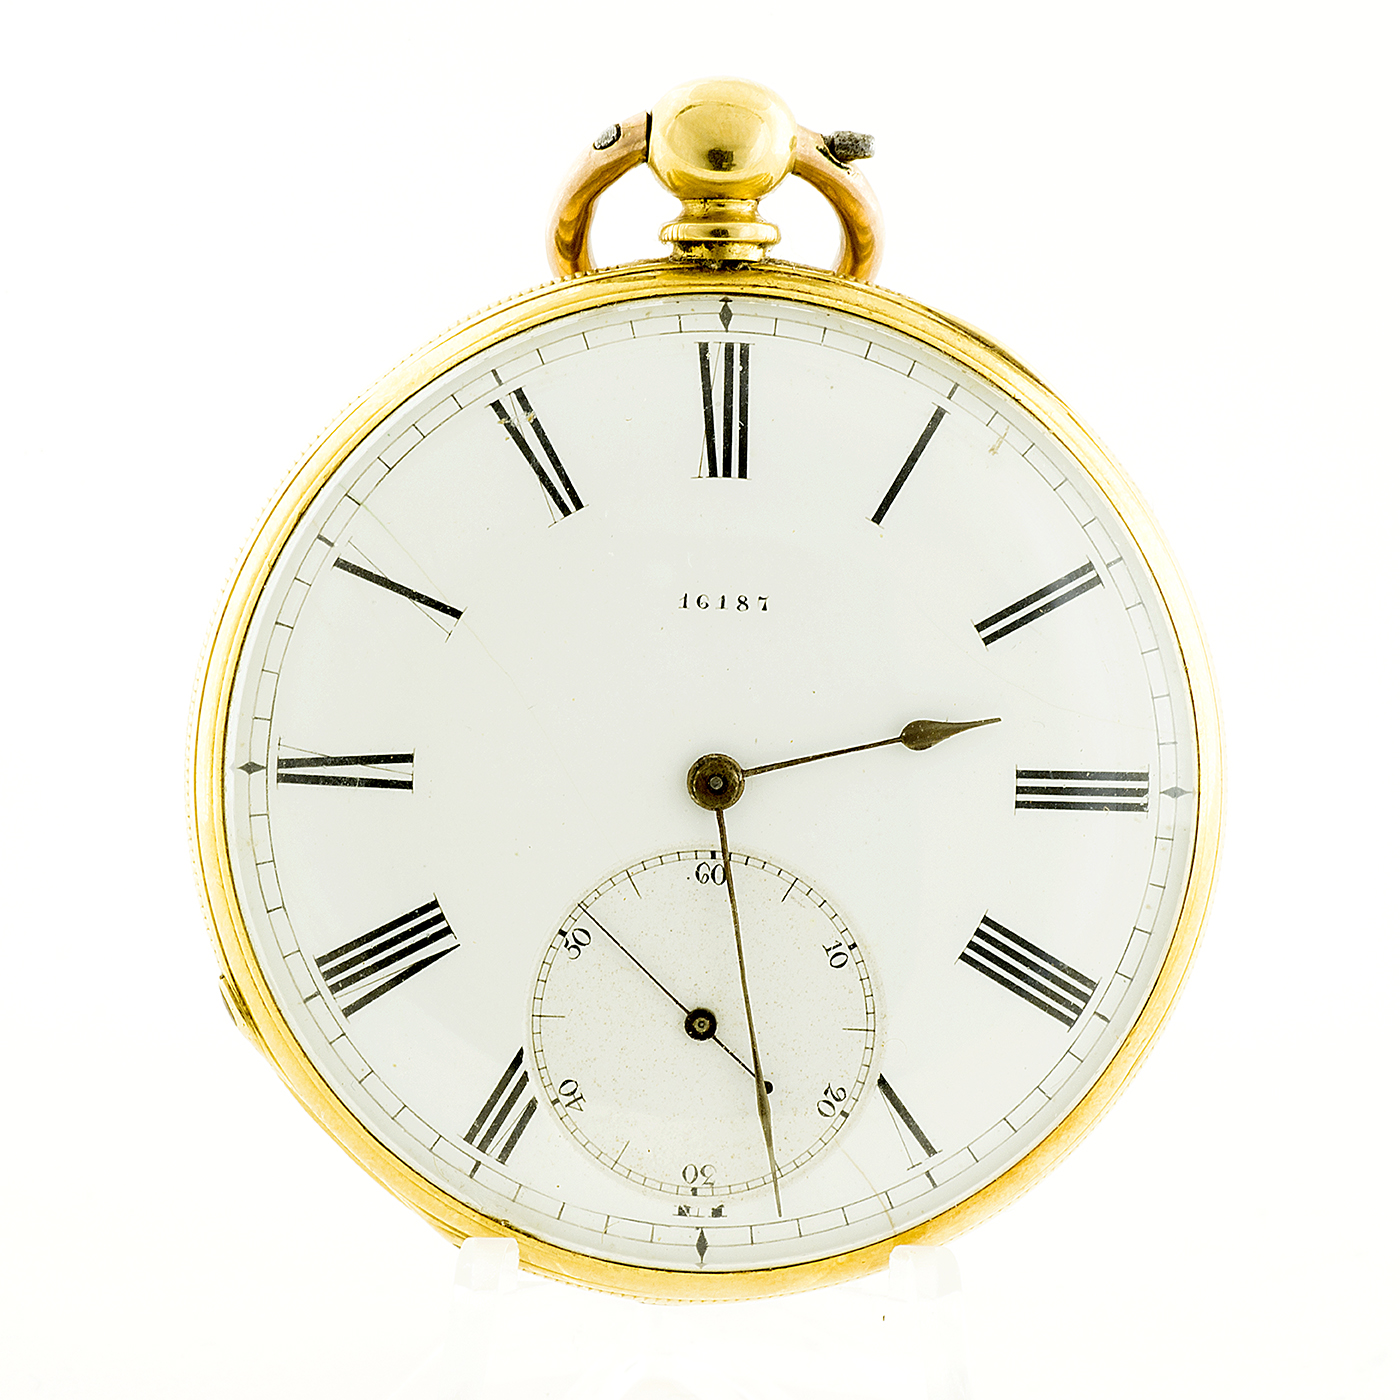 W. Mc Ferran (Manchester). Reloj de bolsillo para caballero, lepine. Ca. 1880. Oro 18k.